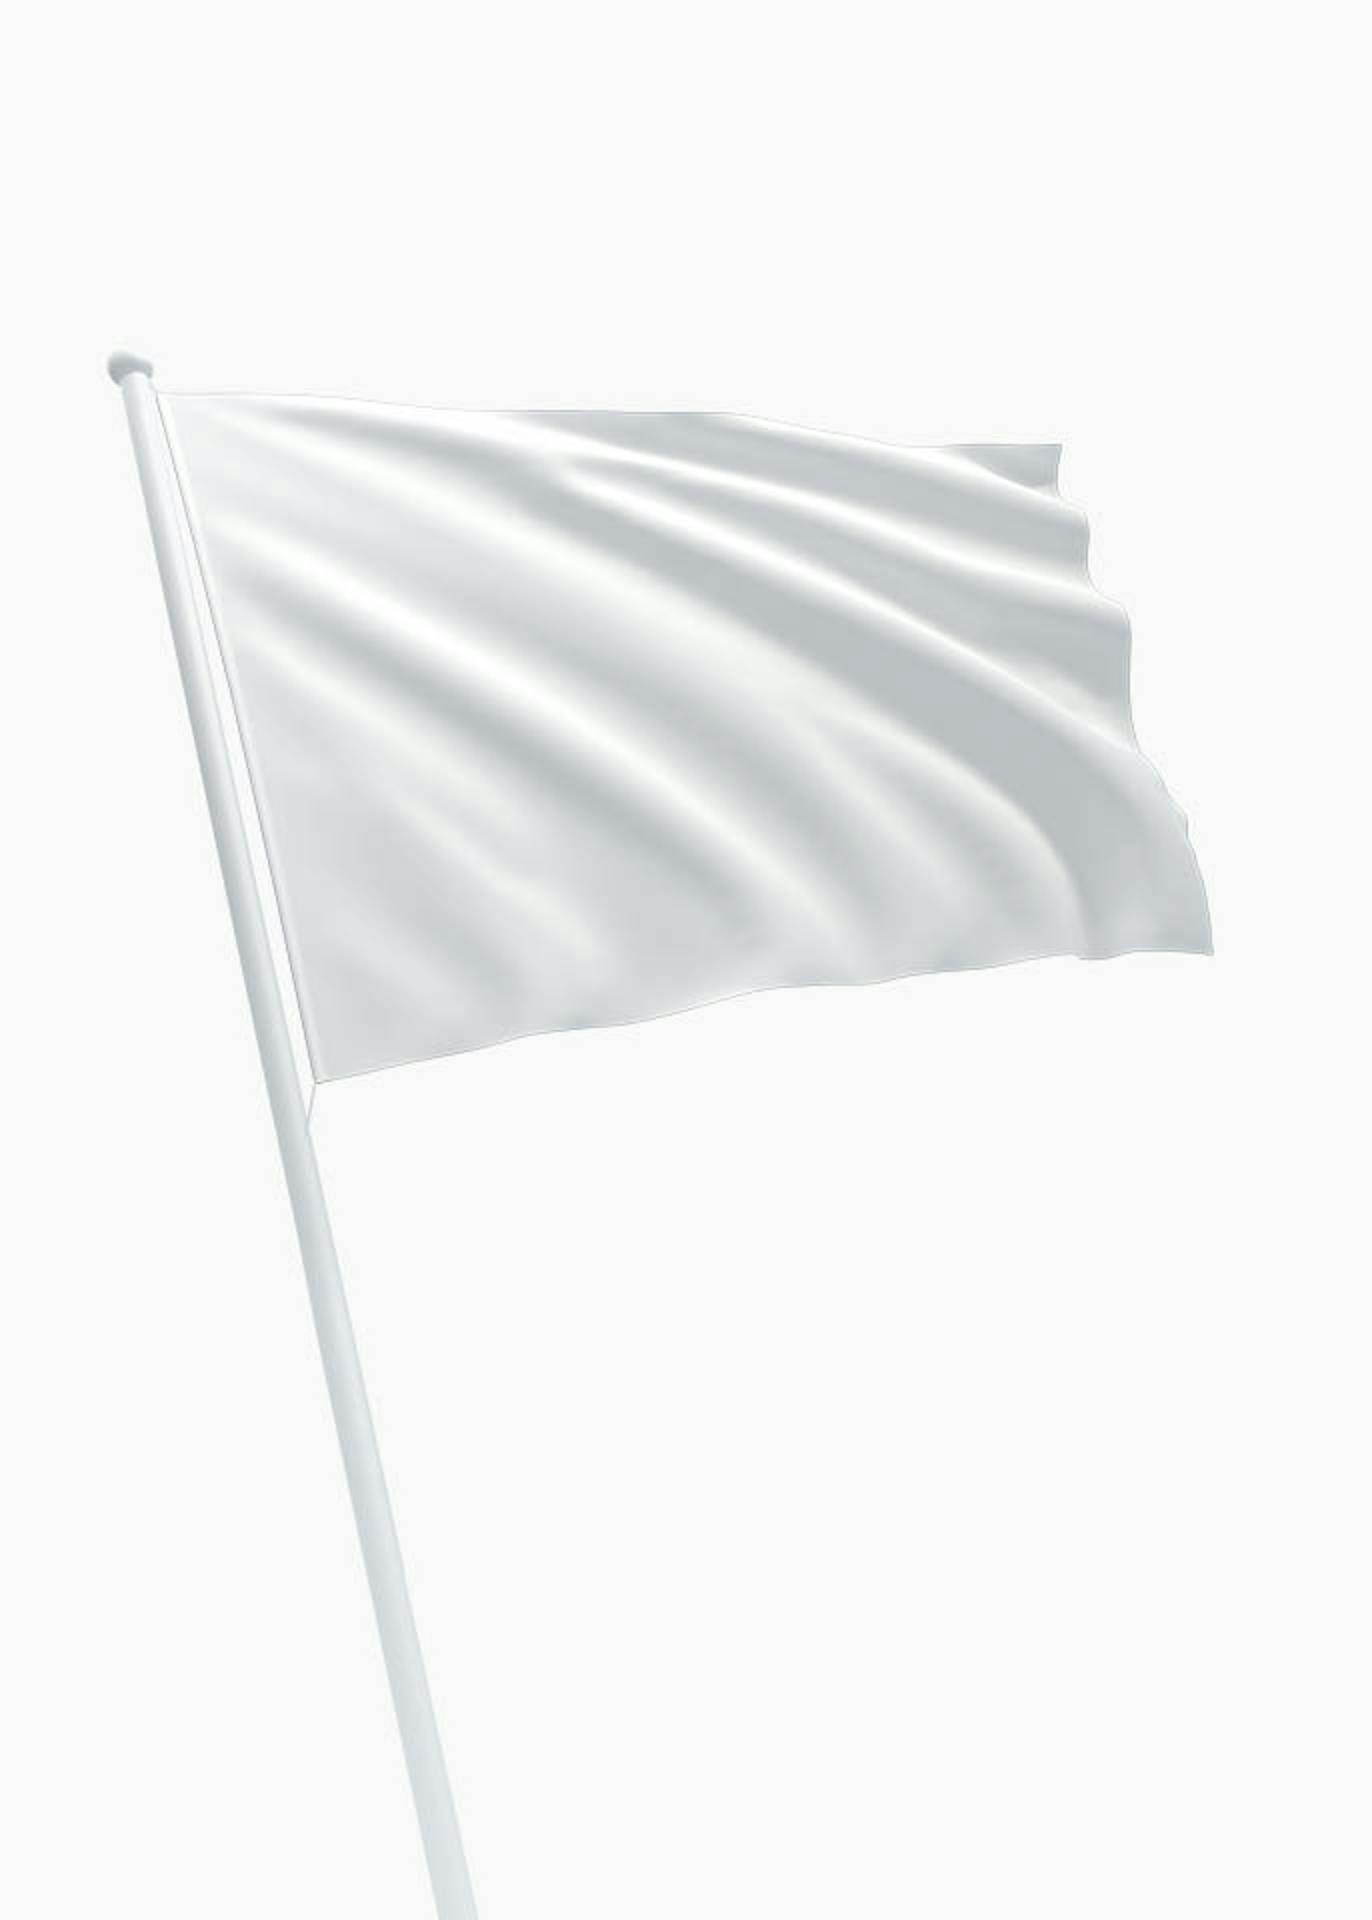 omvatten atoom Ook Witte vlag - Online bestellen - DVC